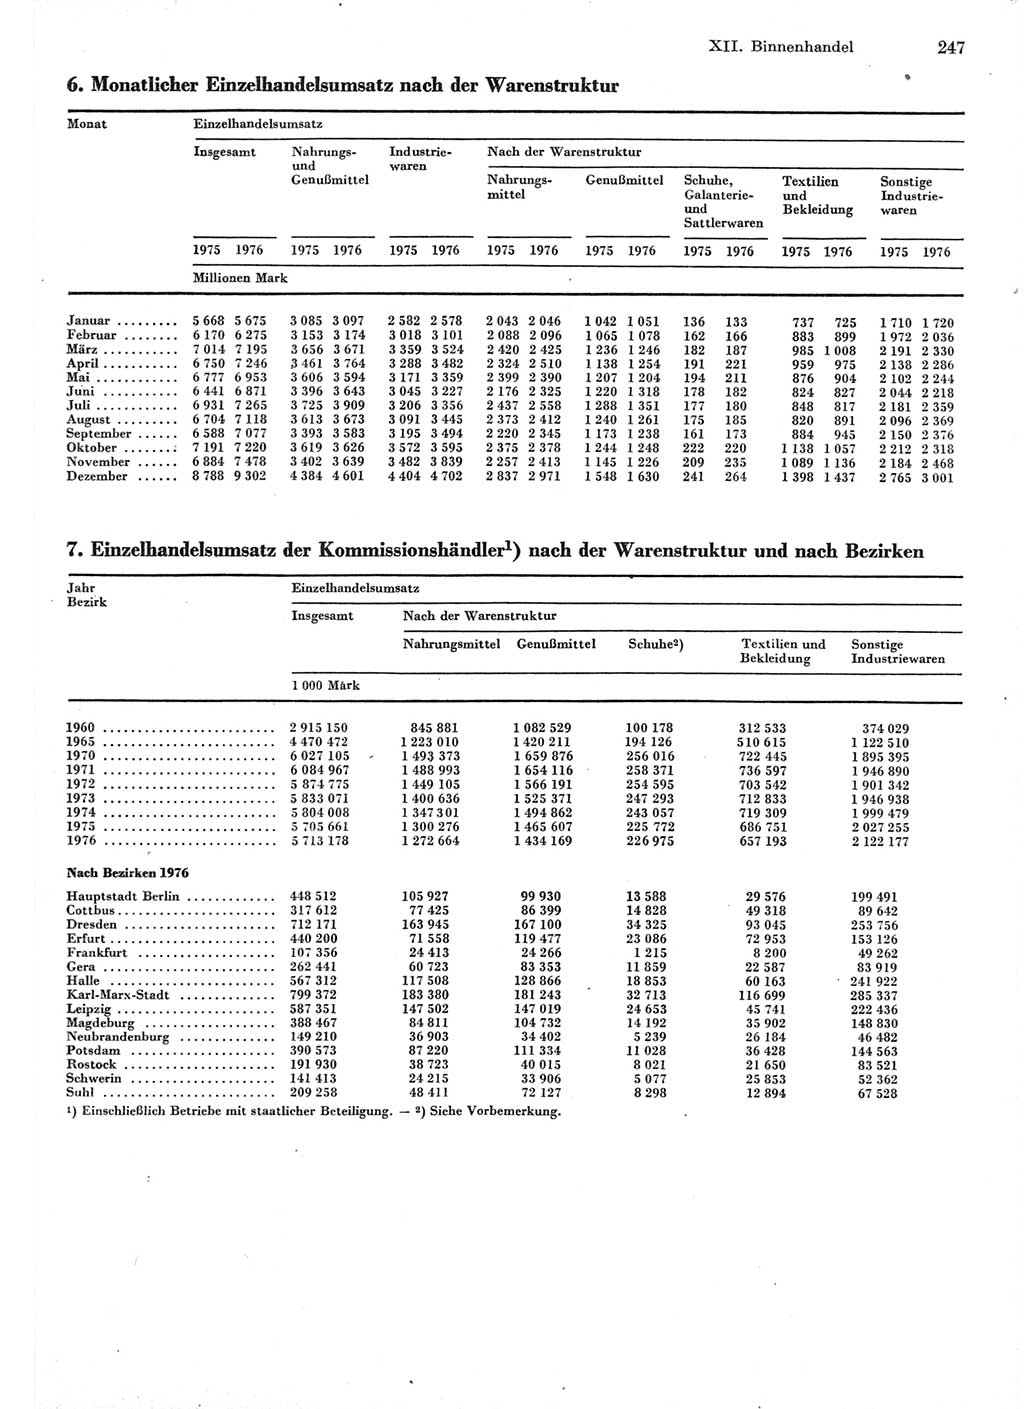 Statistisches Jahrbuch der Deutschen Demokratischen Republik (DDR) 1977, Seite 247 (Stat. Jb. DDR 1977, S. 247)